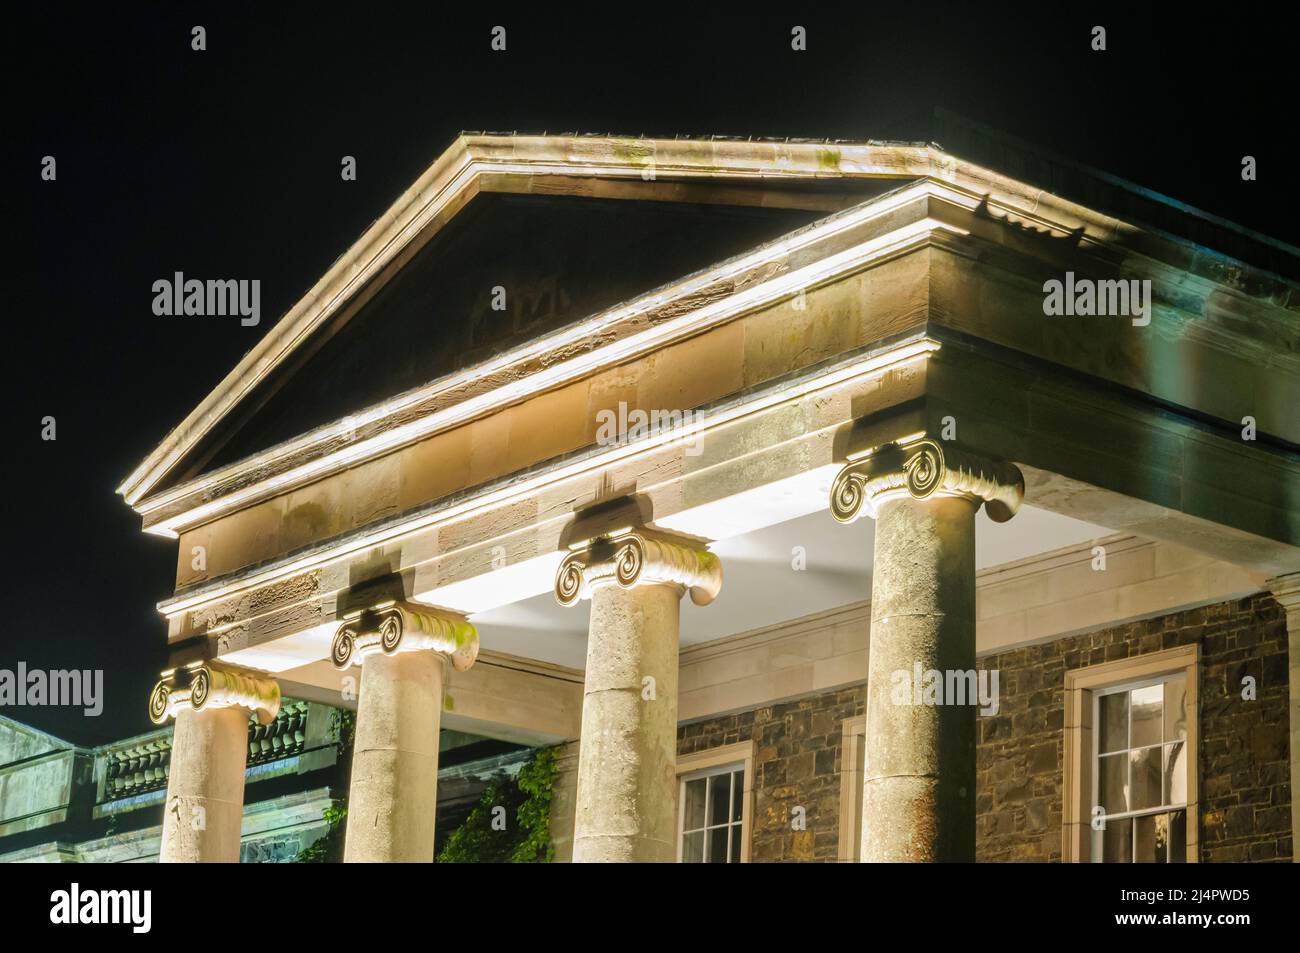 Les colonnes ioniques d'une ancienne demeure seigneuriale, illuminé par la lumière artificielle la nuit Banque D'Images